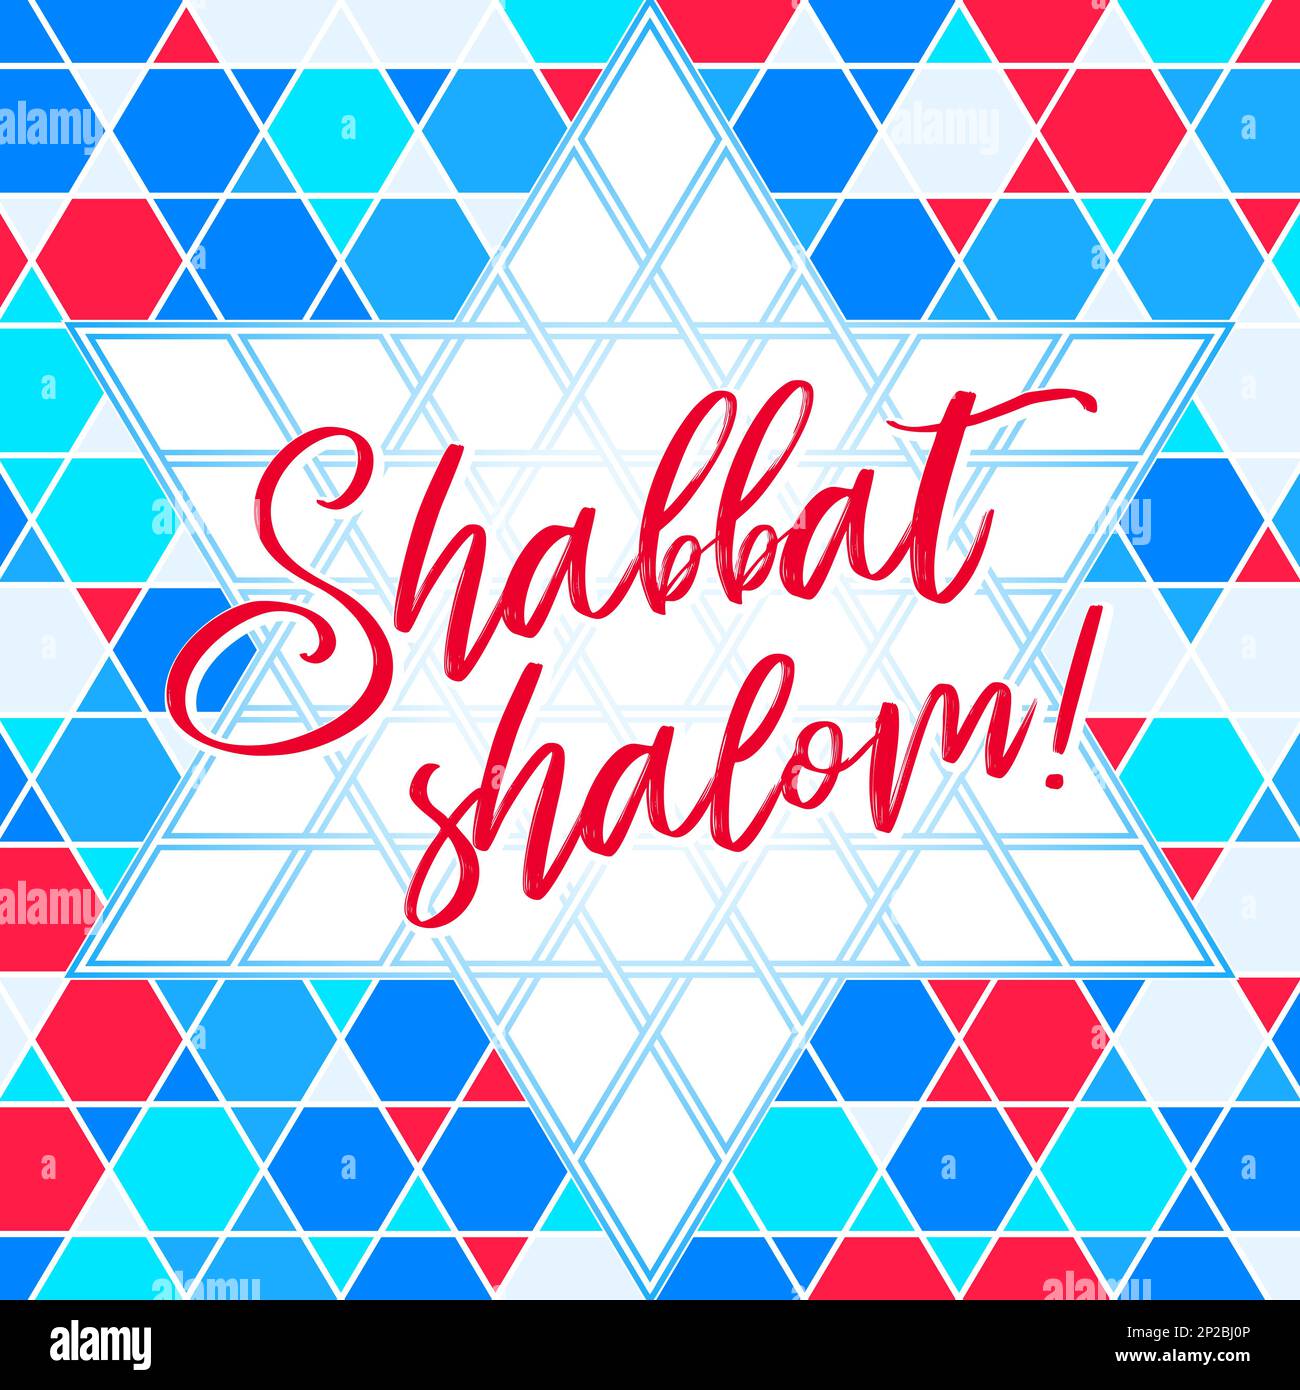 Carte de vœux Shabbat Shalom colorée, illustration vectorielle. Félicitations religieuses juives pour le Sabbat en hébreu. Motif géométrique abstrait en mosaïque au dos Illustration de Vecteur